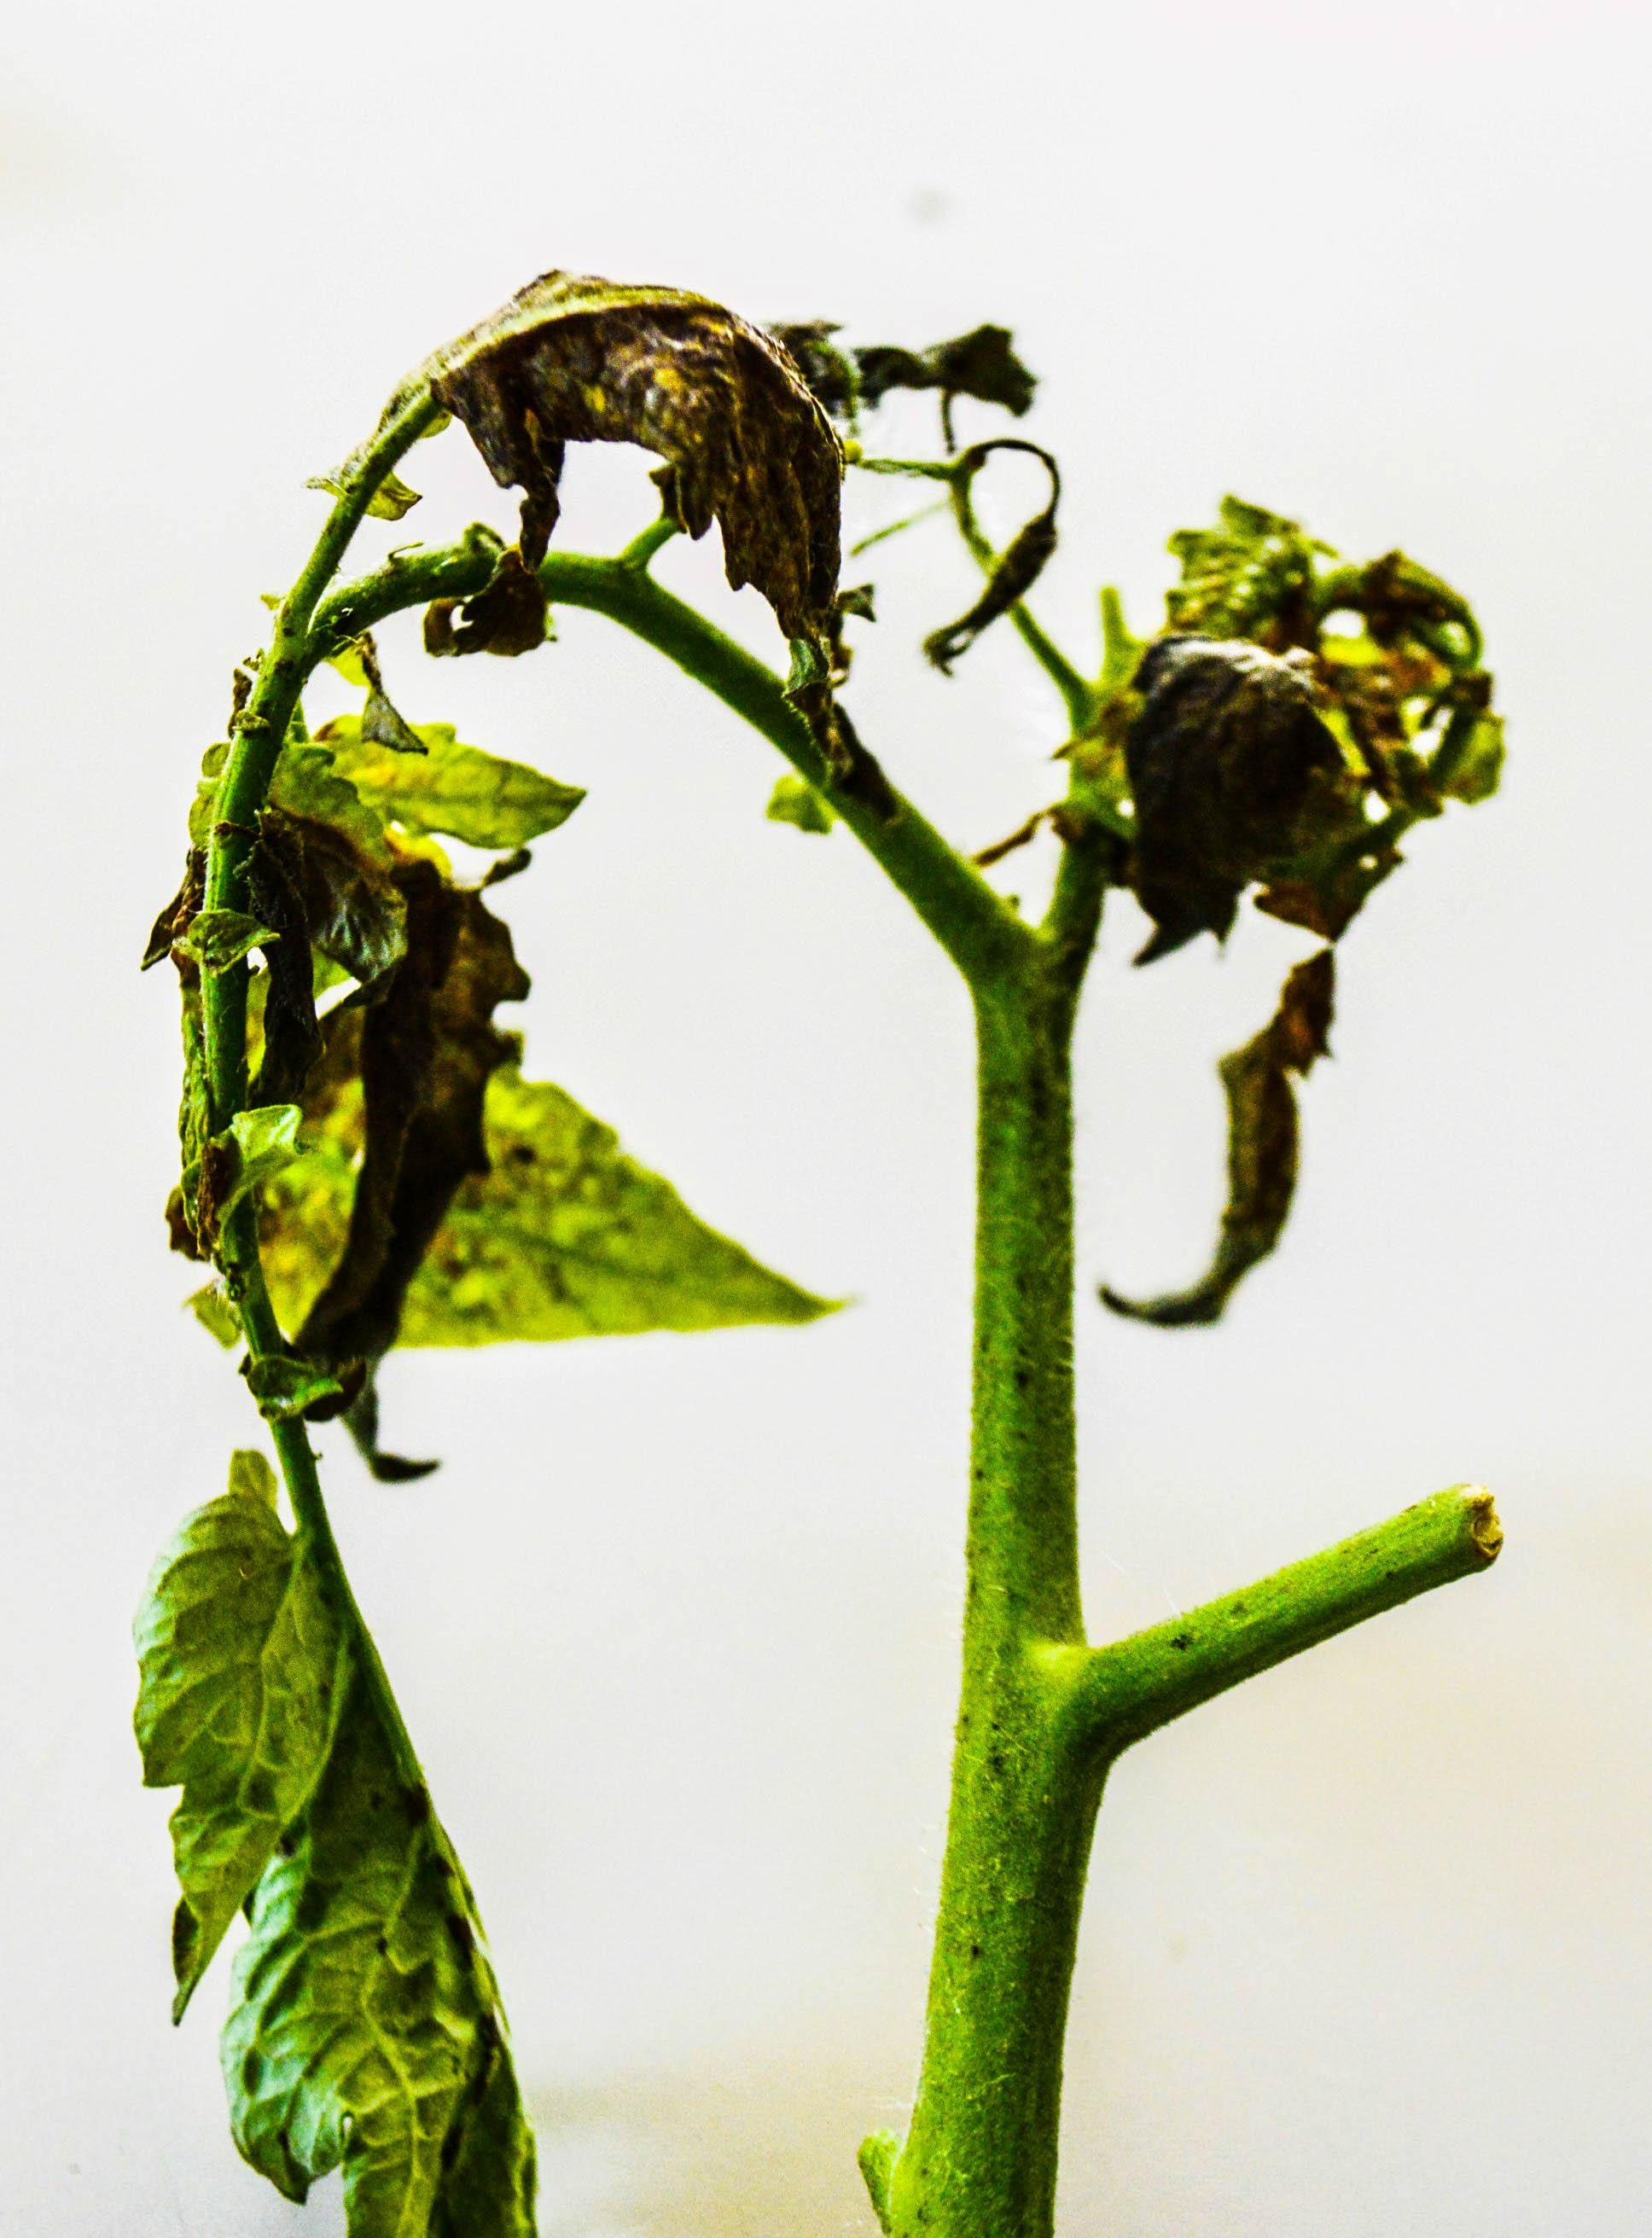 <p><b><p>Ramo apical de tomateiro com sintomas de folhas curvadas para baixo e necrose causados pelo <em>Groundnut ringspot orthotospovirus </em>(GRSV).</p></b></p><p>Autor: Leilane K. Rodrigues</p>